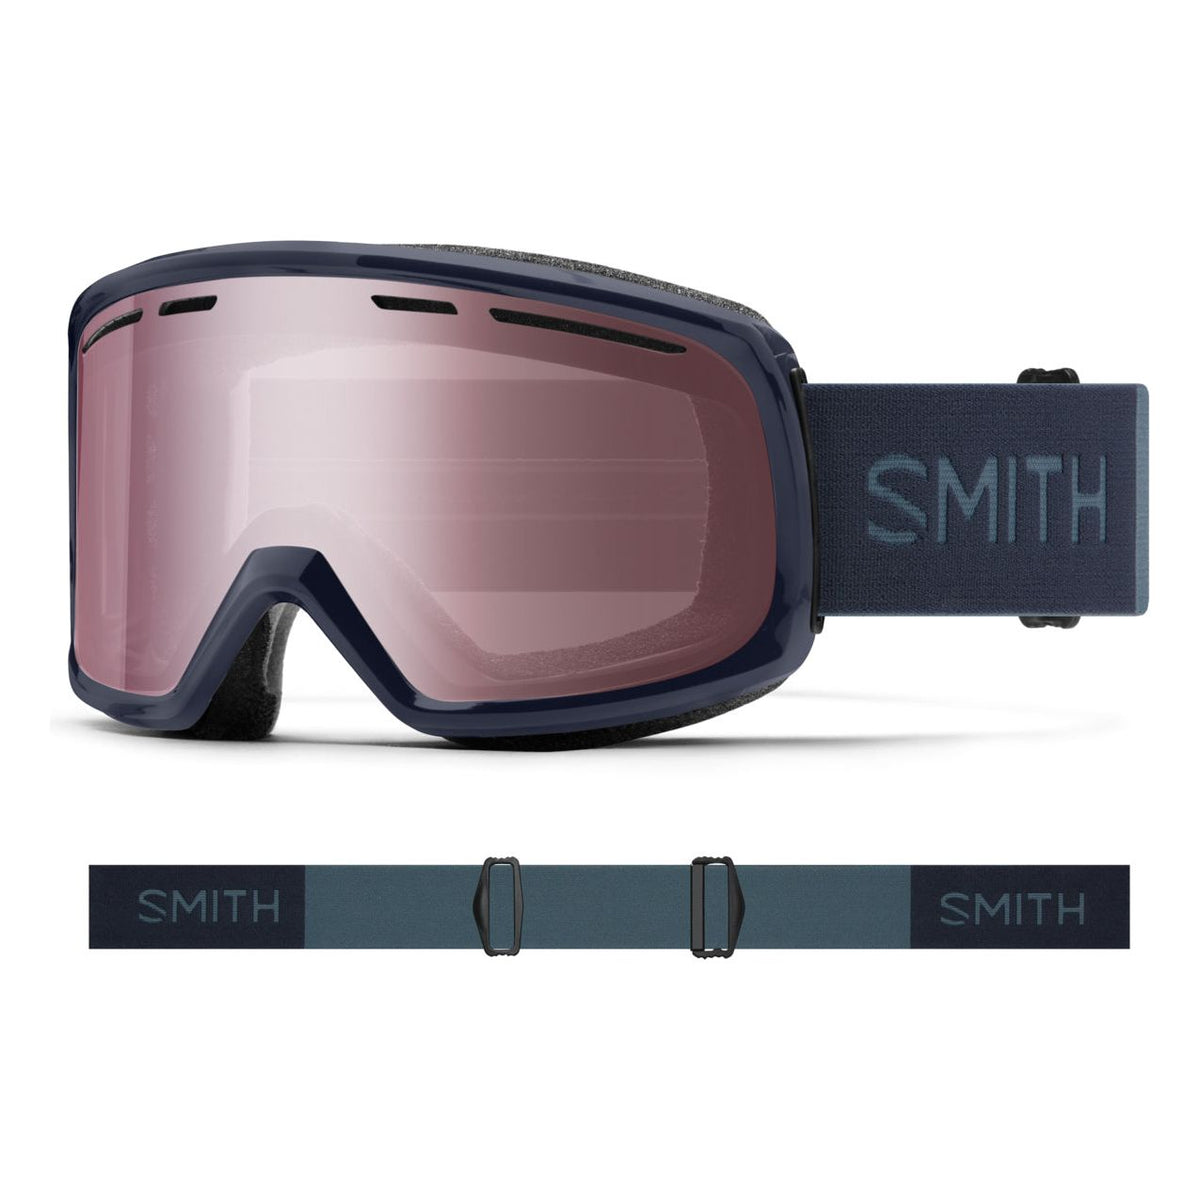 Smith Optics Range Goggles